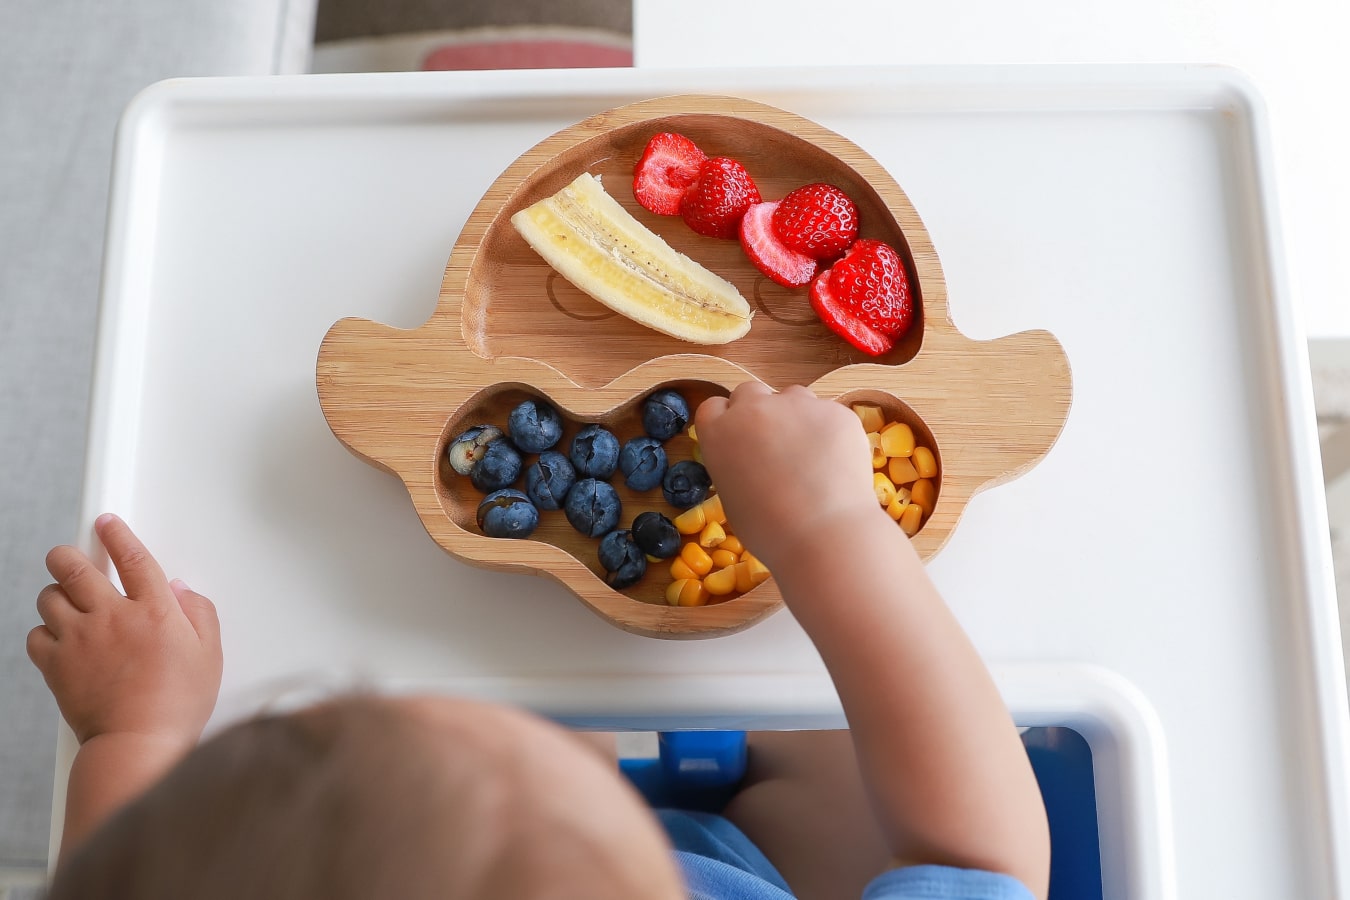 Na drewnianym talerzu z przegródkami widać kolorowe owoce i warzywa: banana, borówki, kukurydzę i truskawki. Dziecko sięga po jedzenie